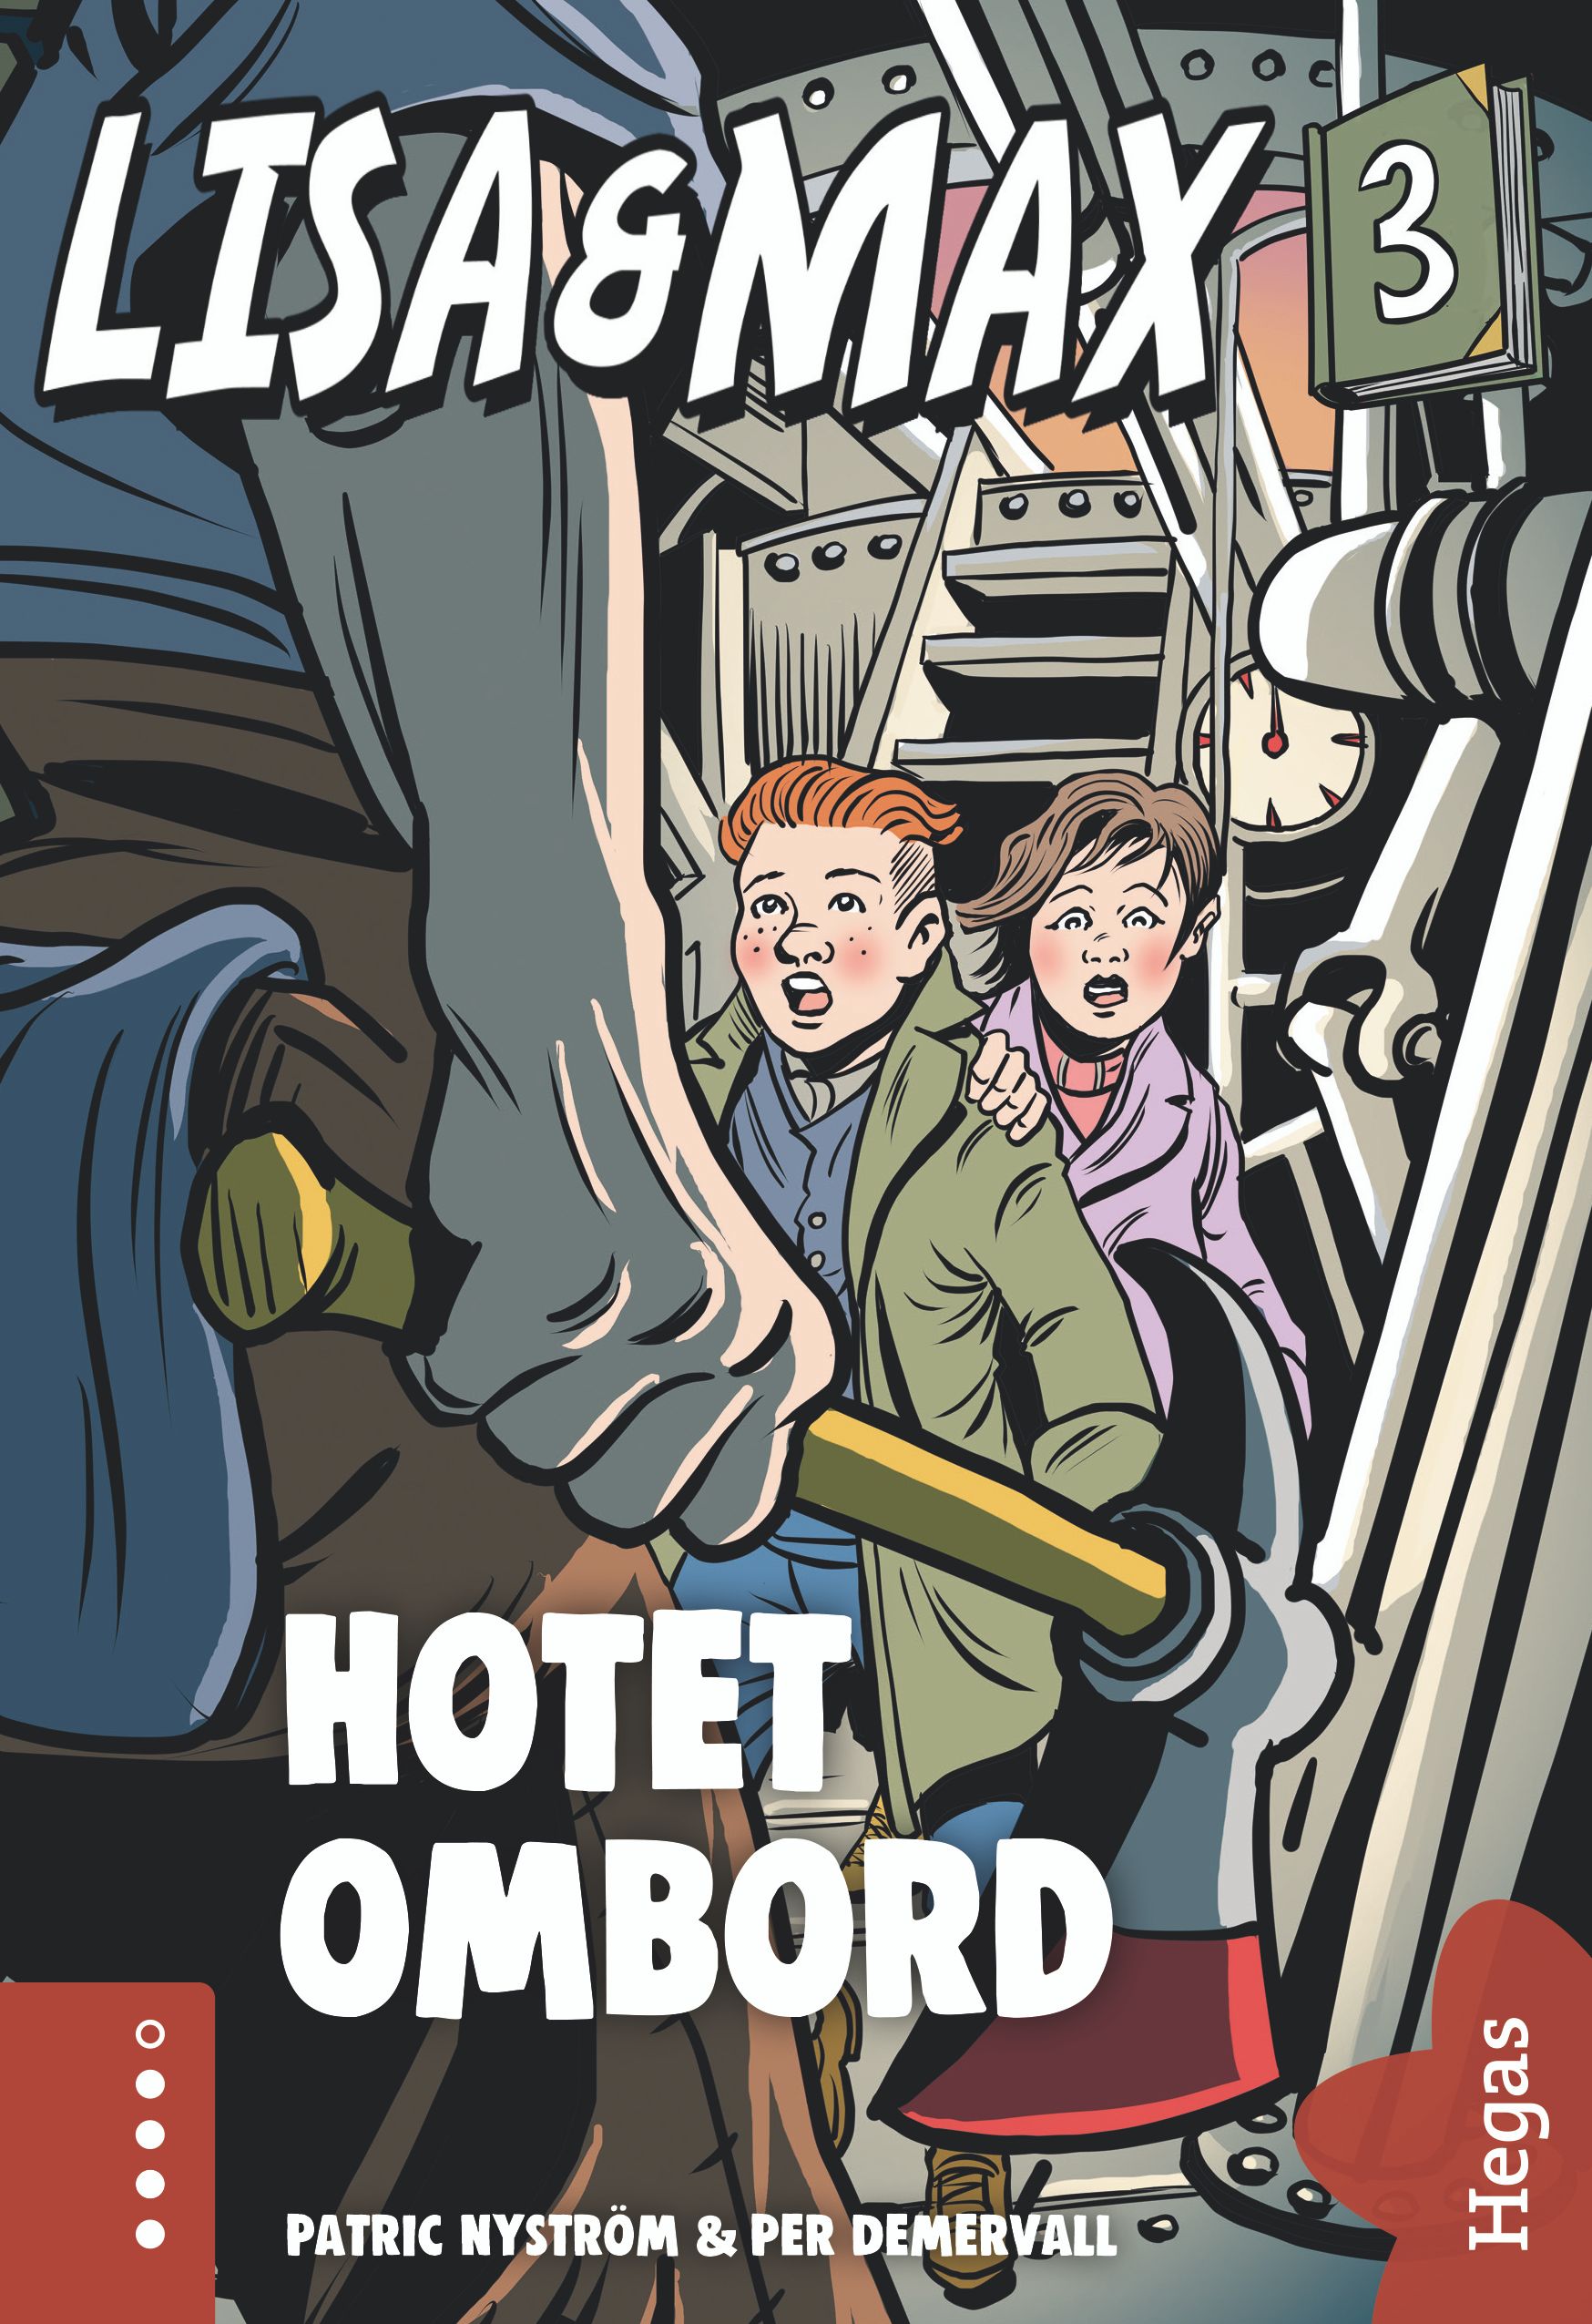 Lisa och Max - Hotet ombord, e-bog af Patric Nyström